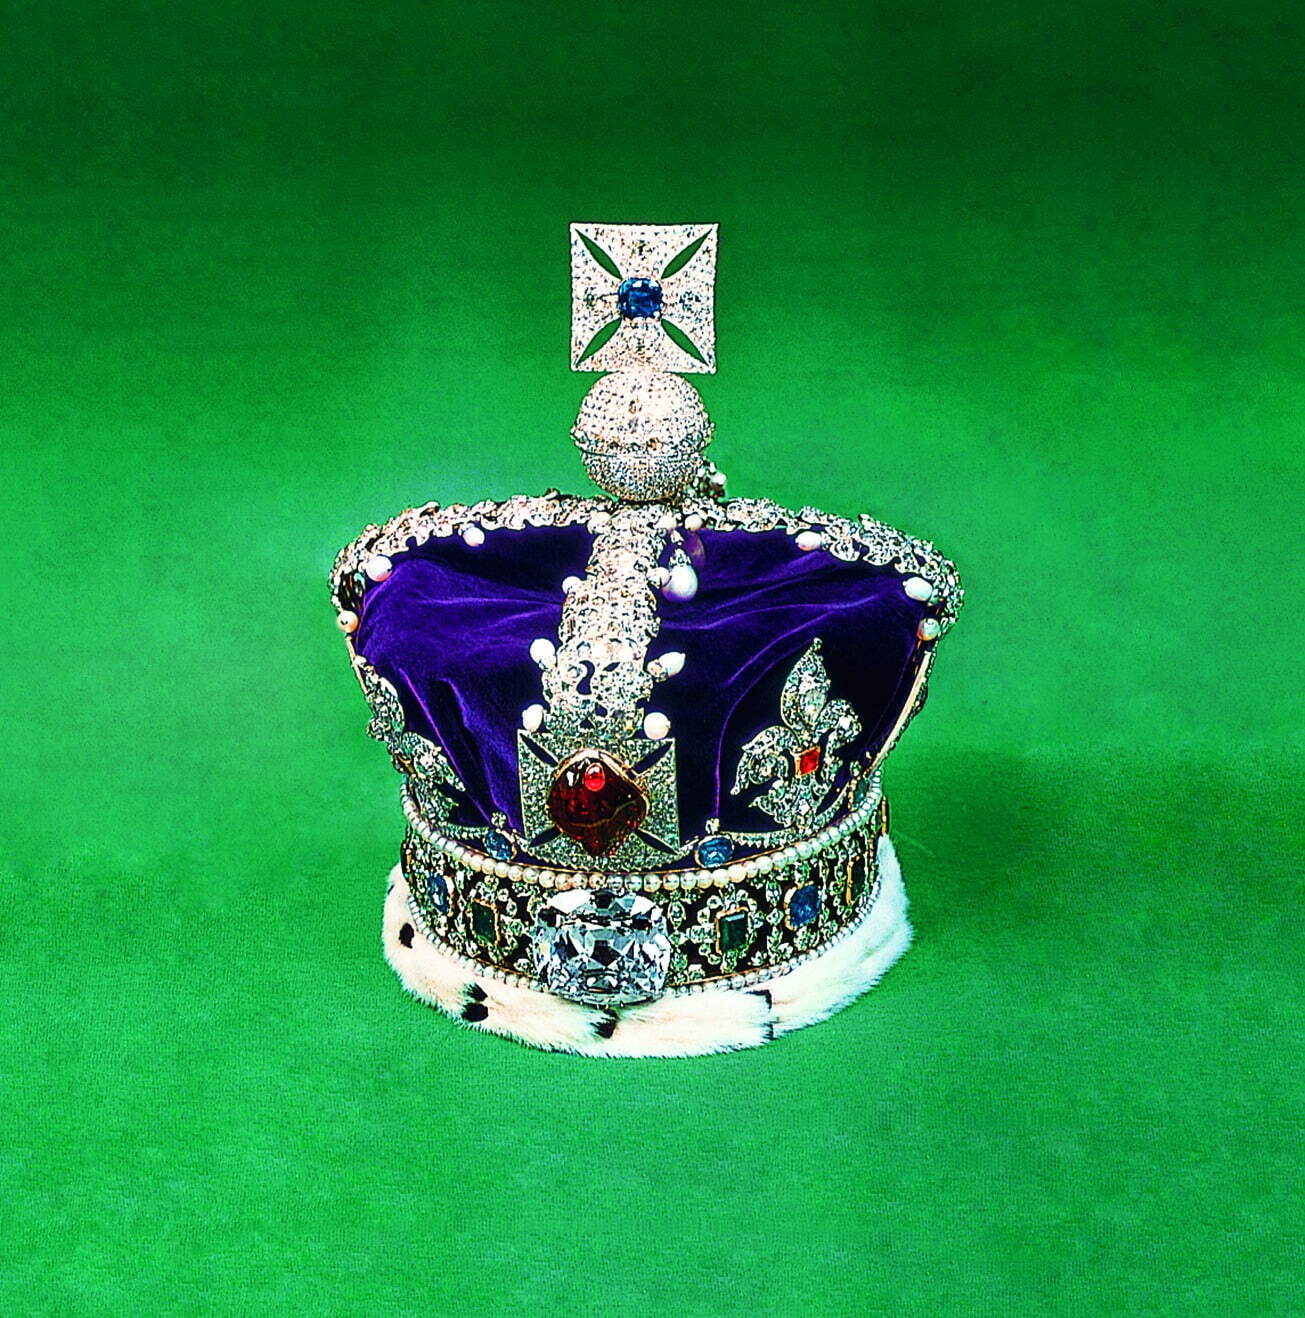 「カリナンII世」が施された大英帝国王冠